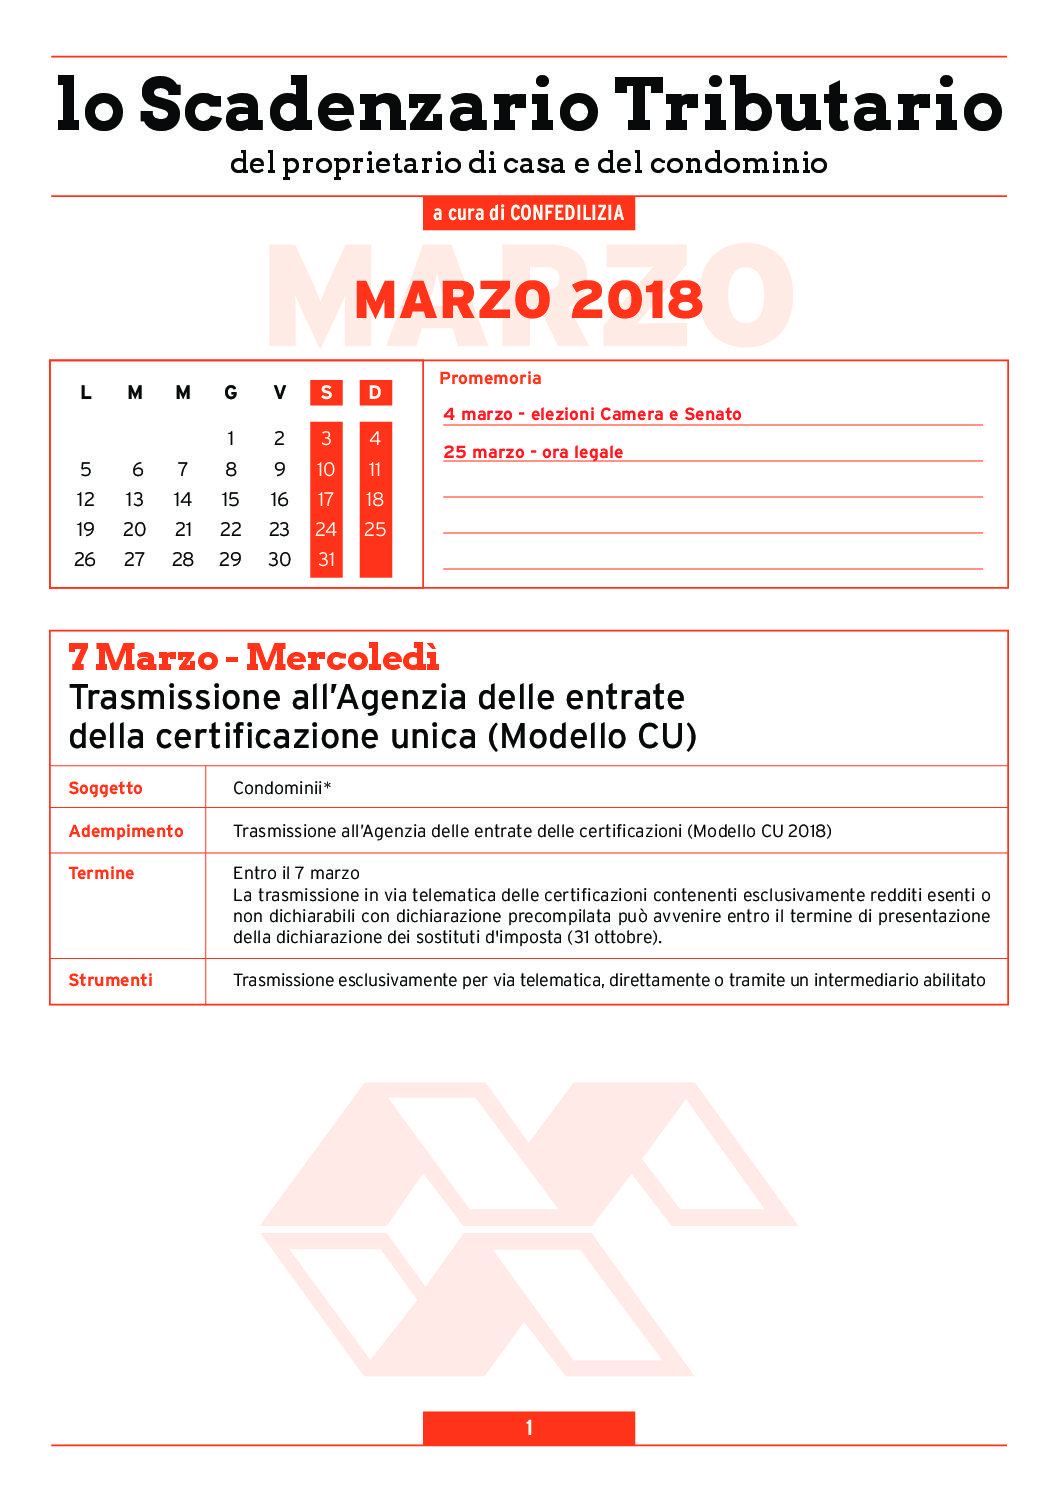 SCADENZARIO TRIBUTARIO MARZO 2018 (6 pagg )